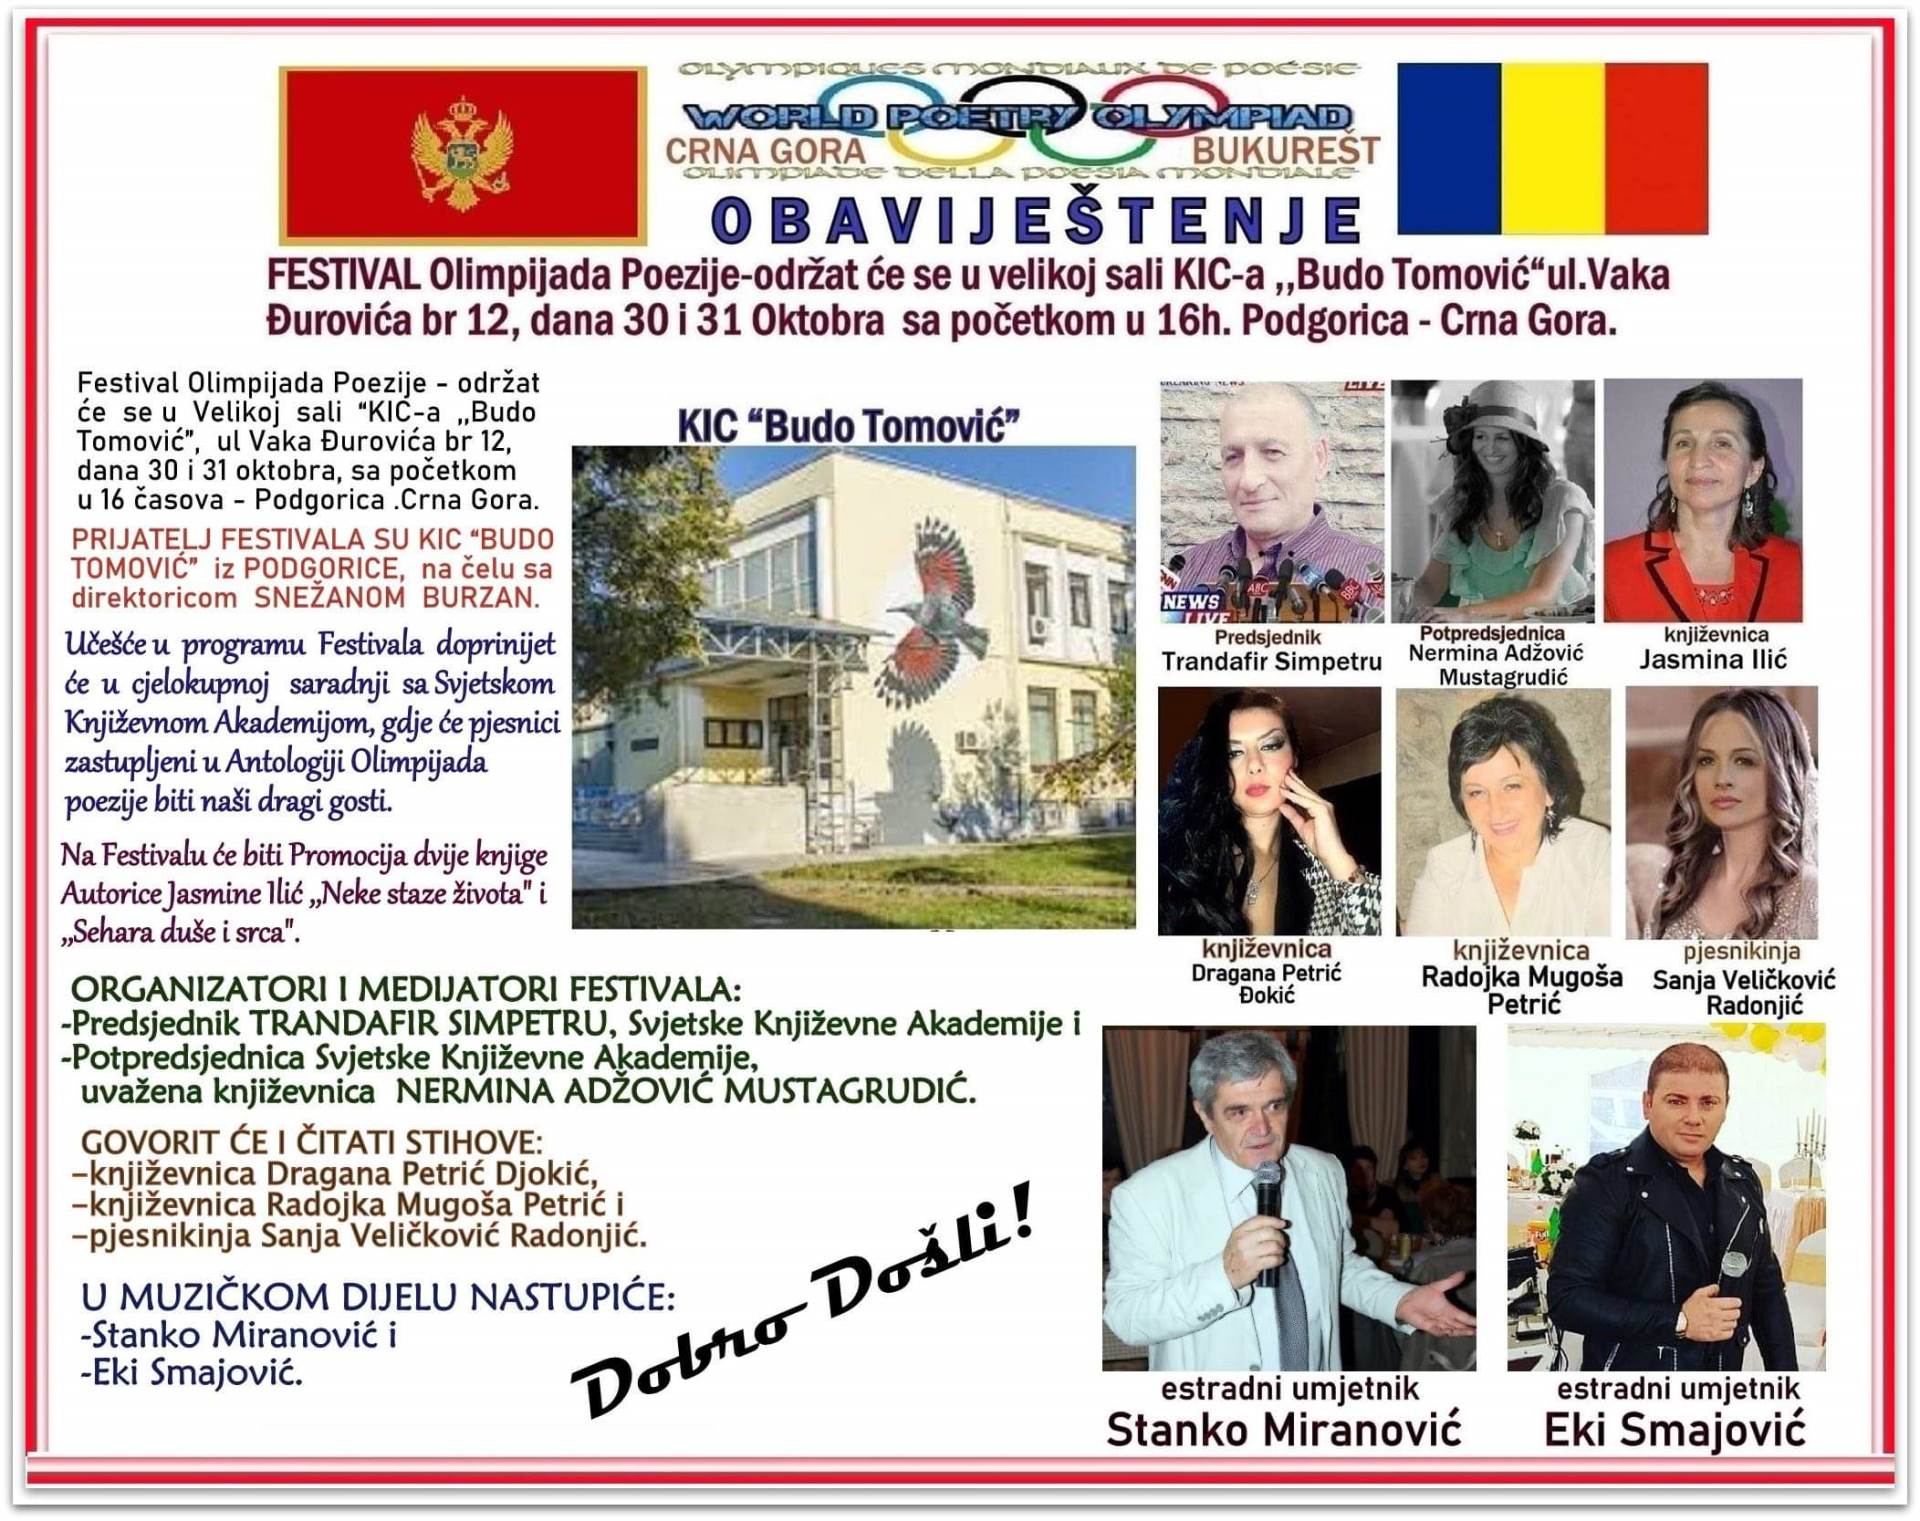  Festival “Olimpijada Poezije” 30. i 31. oktobra  u Podgorici 